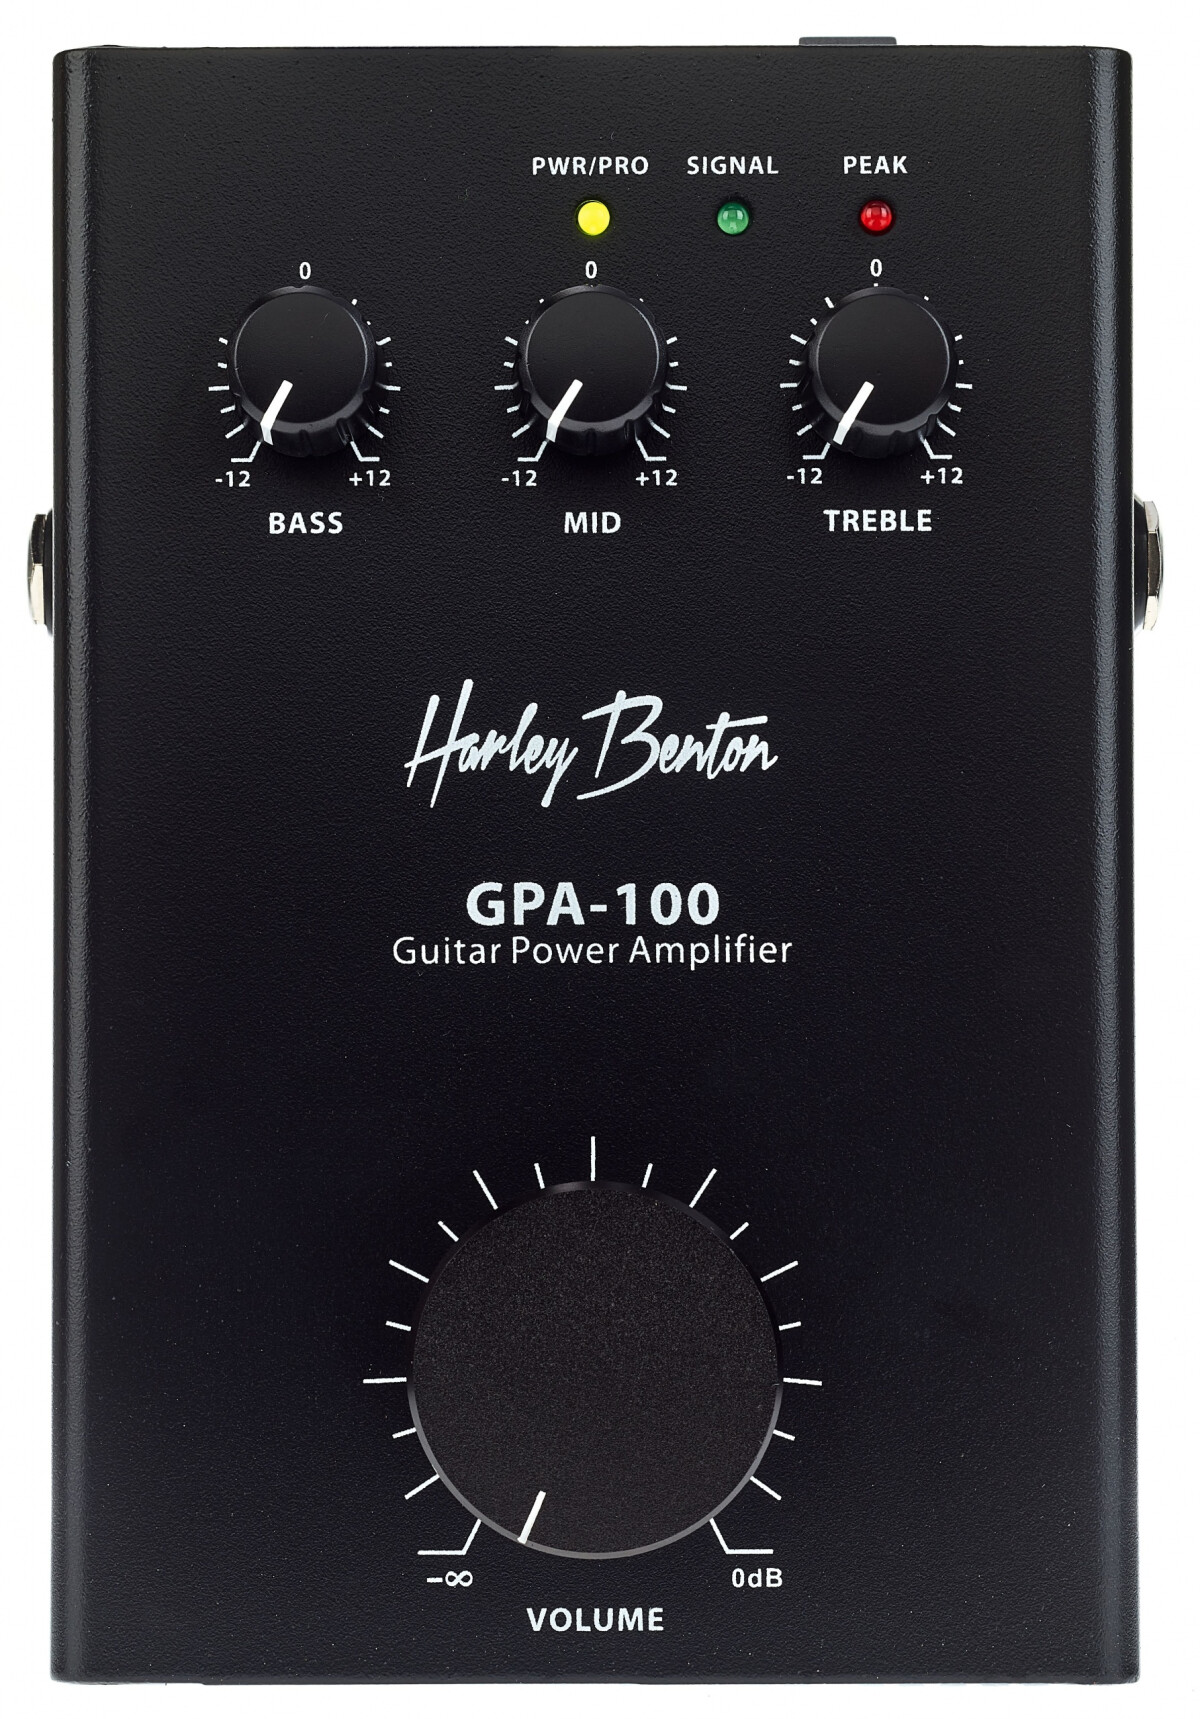 Harley Benton présente le GPA-100